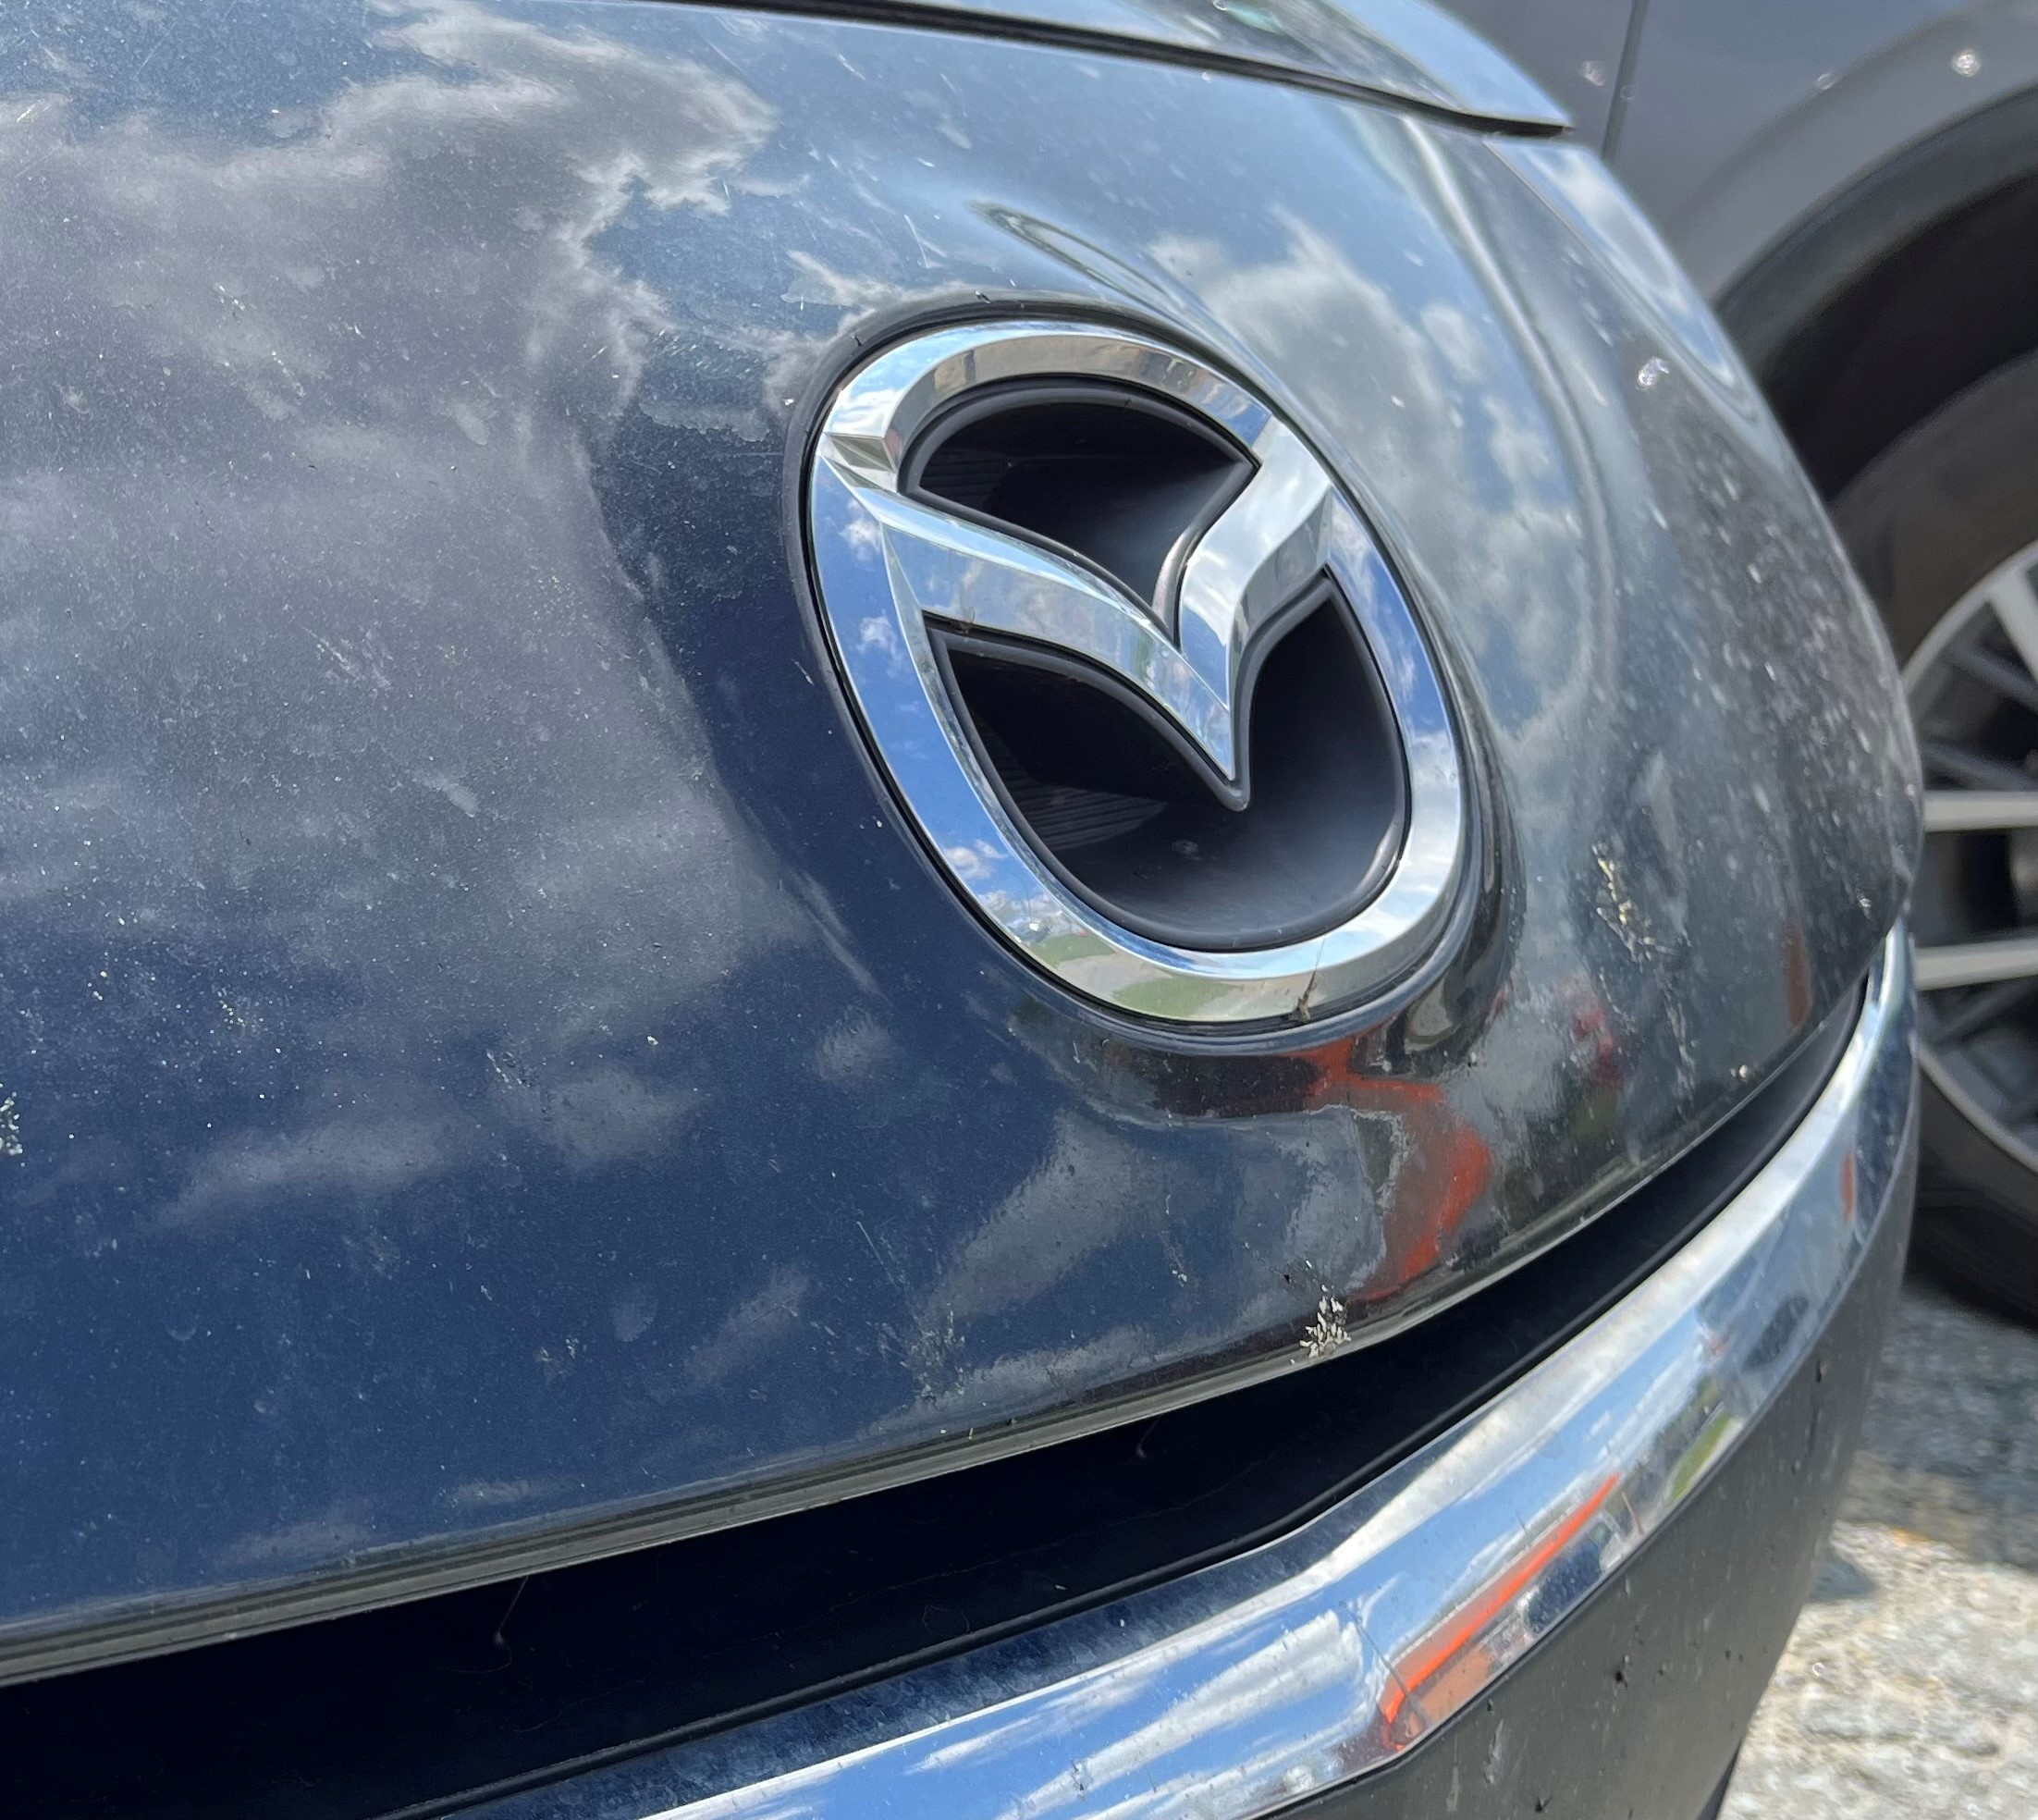 Les faits reprochés à Mazda de Sherbrooke sont survenus entre janvier et avril 2021.